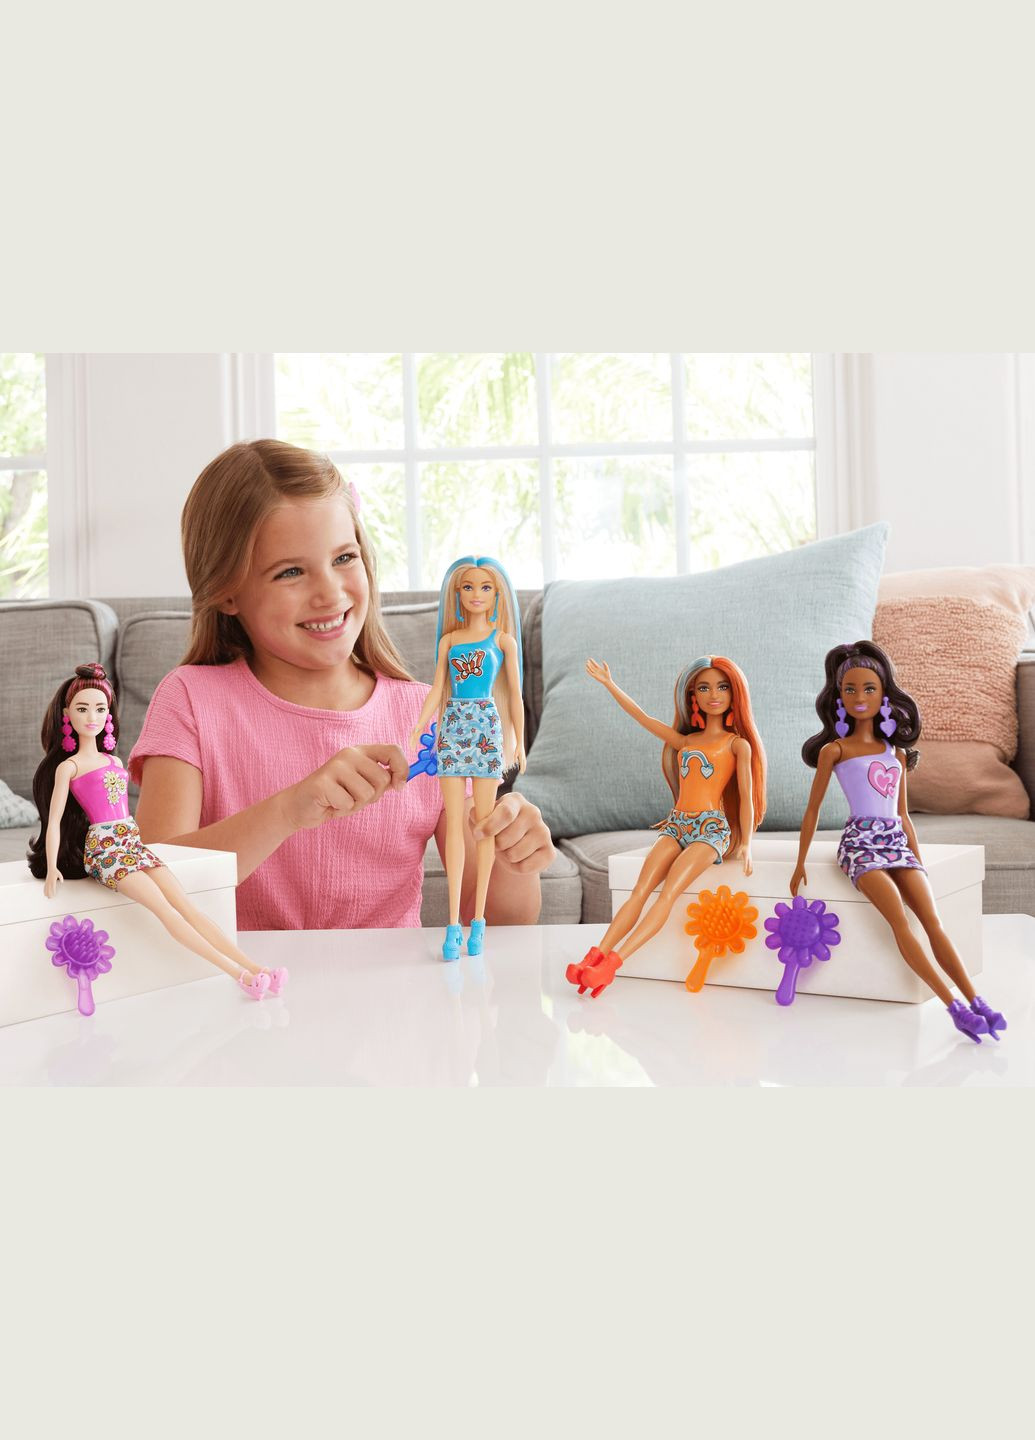 Лялька "Кольорове перевтілення", серія "Райдужні та стильні" (в ас.) (HRK06) Barbie (290841571)